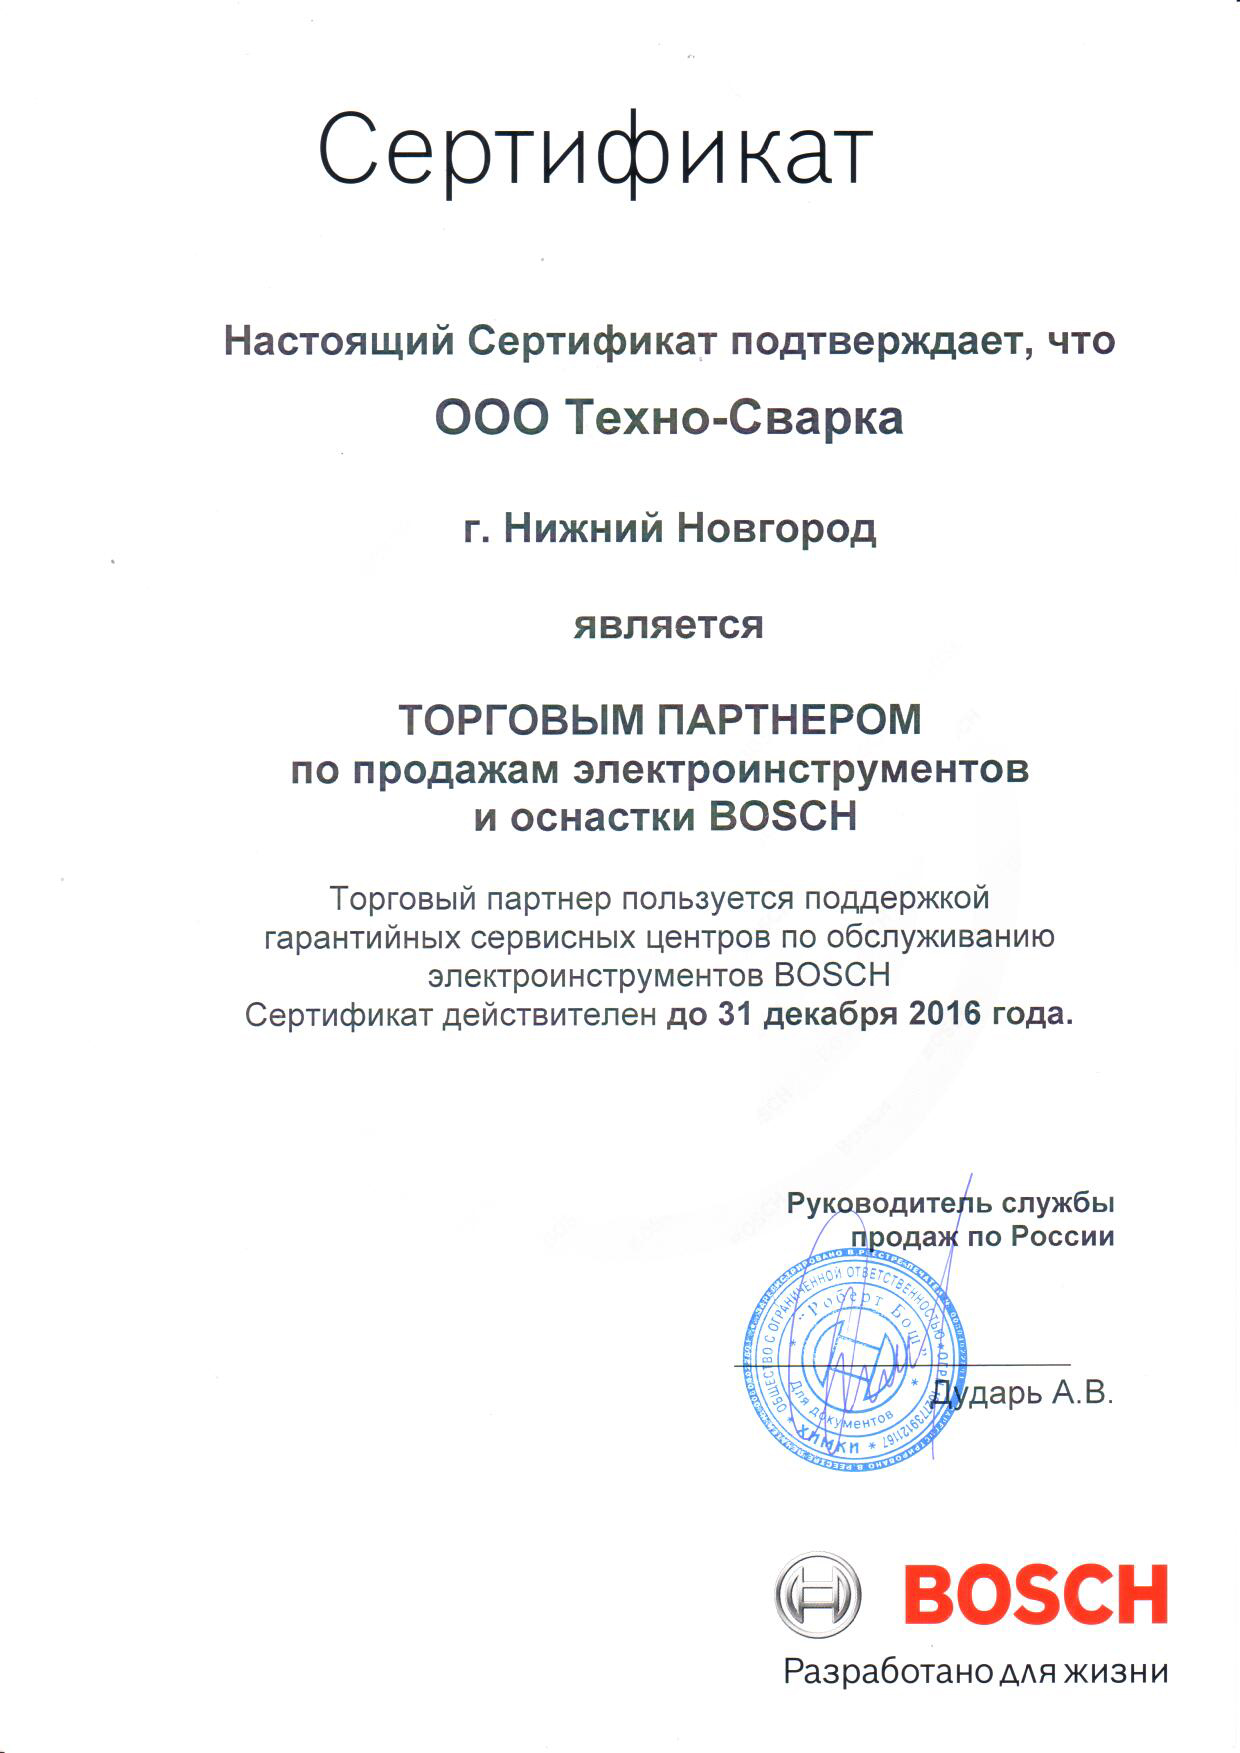 Сертификат торгового партнера BOSCH